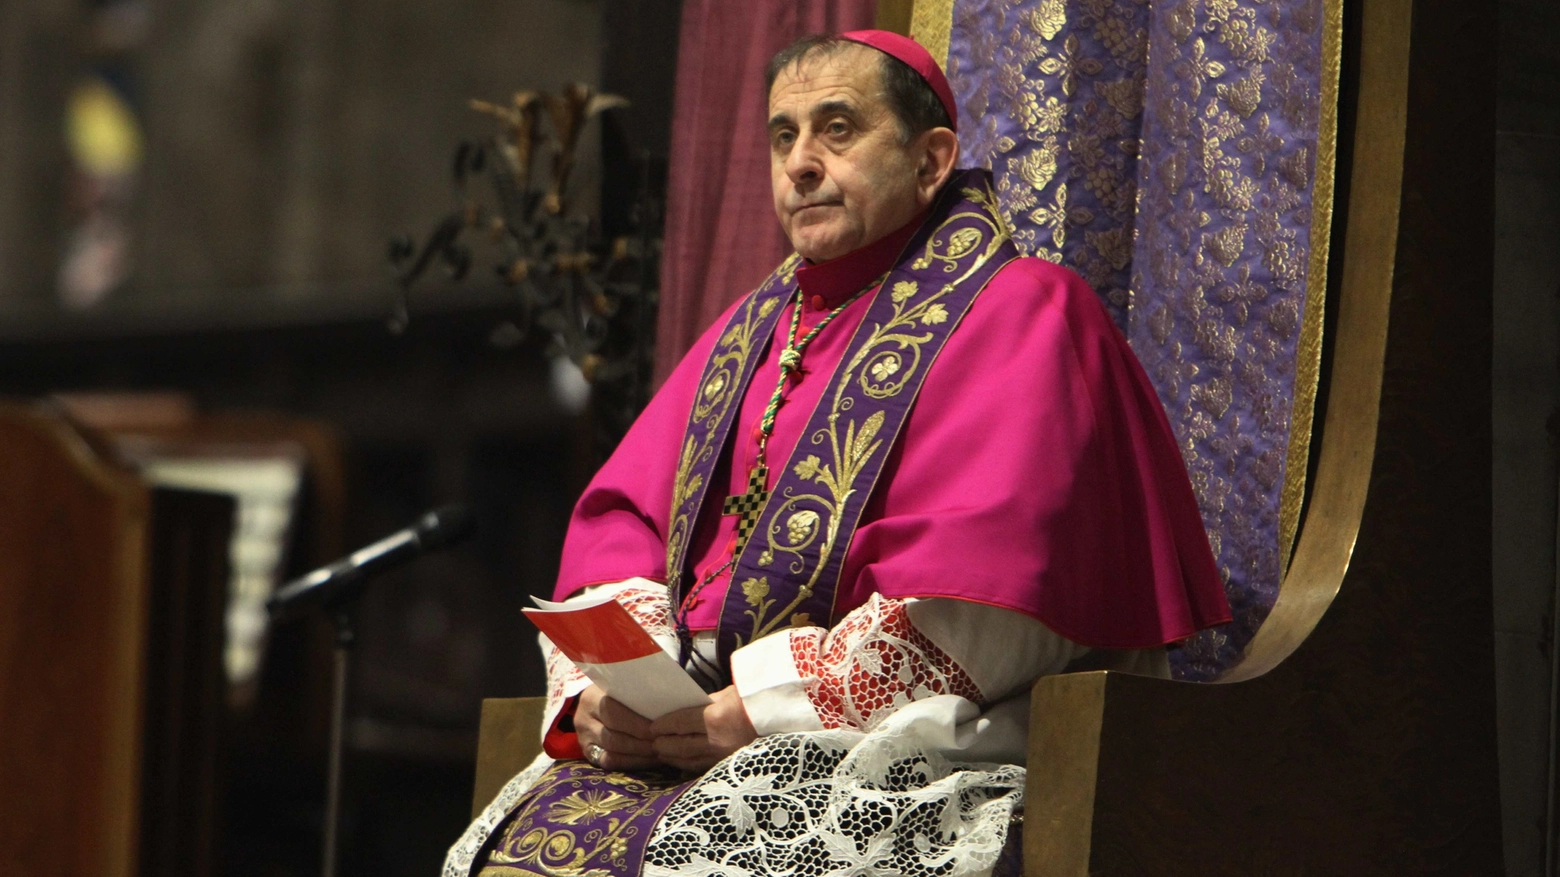 Il vescovo Mario Delpini